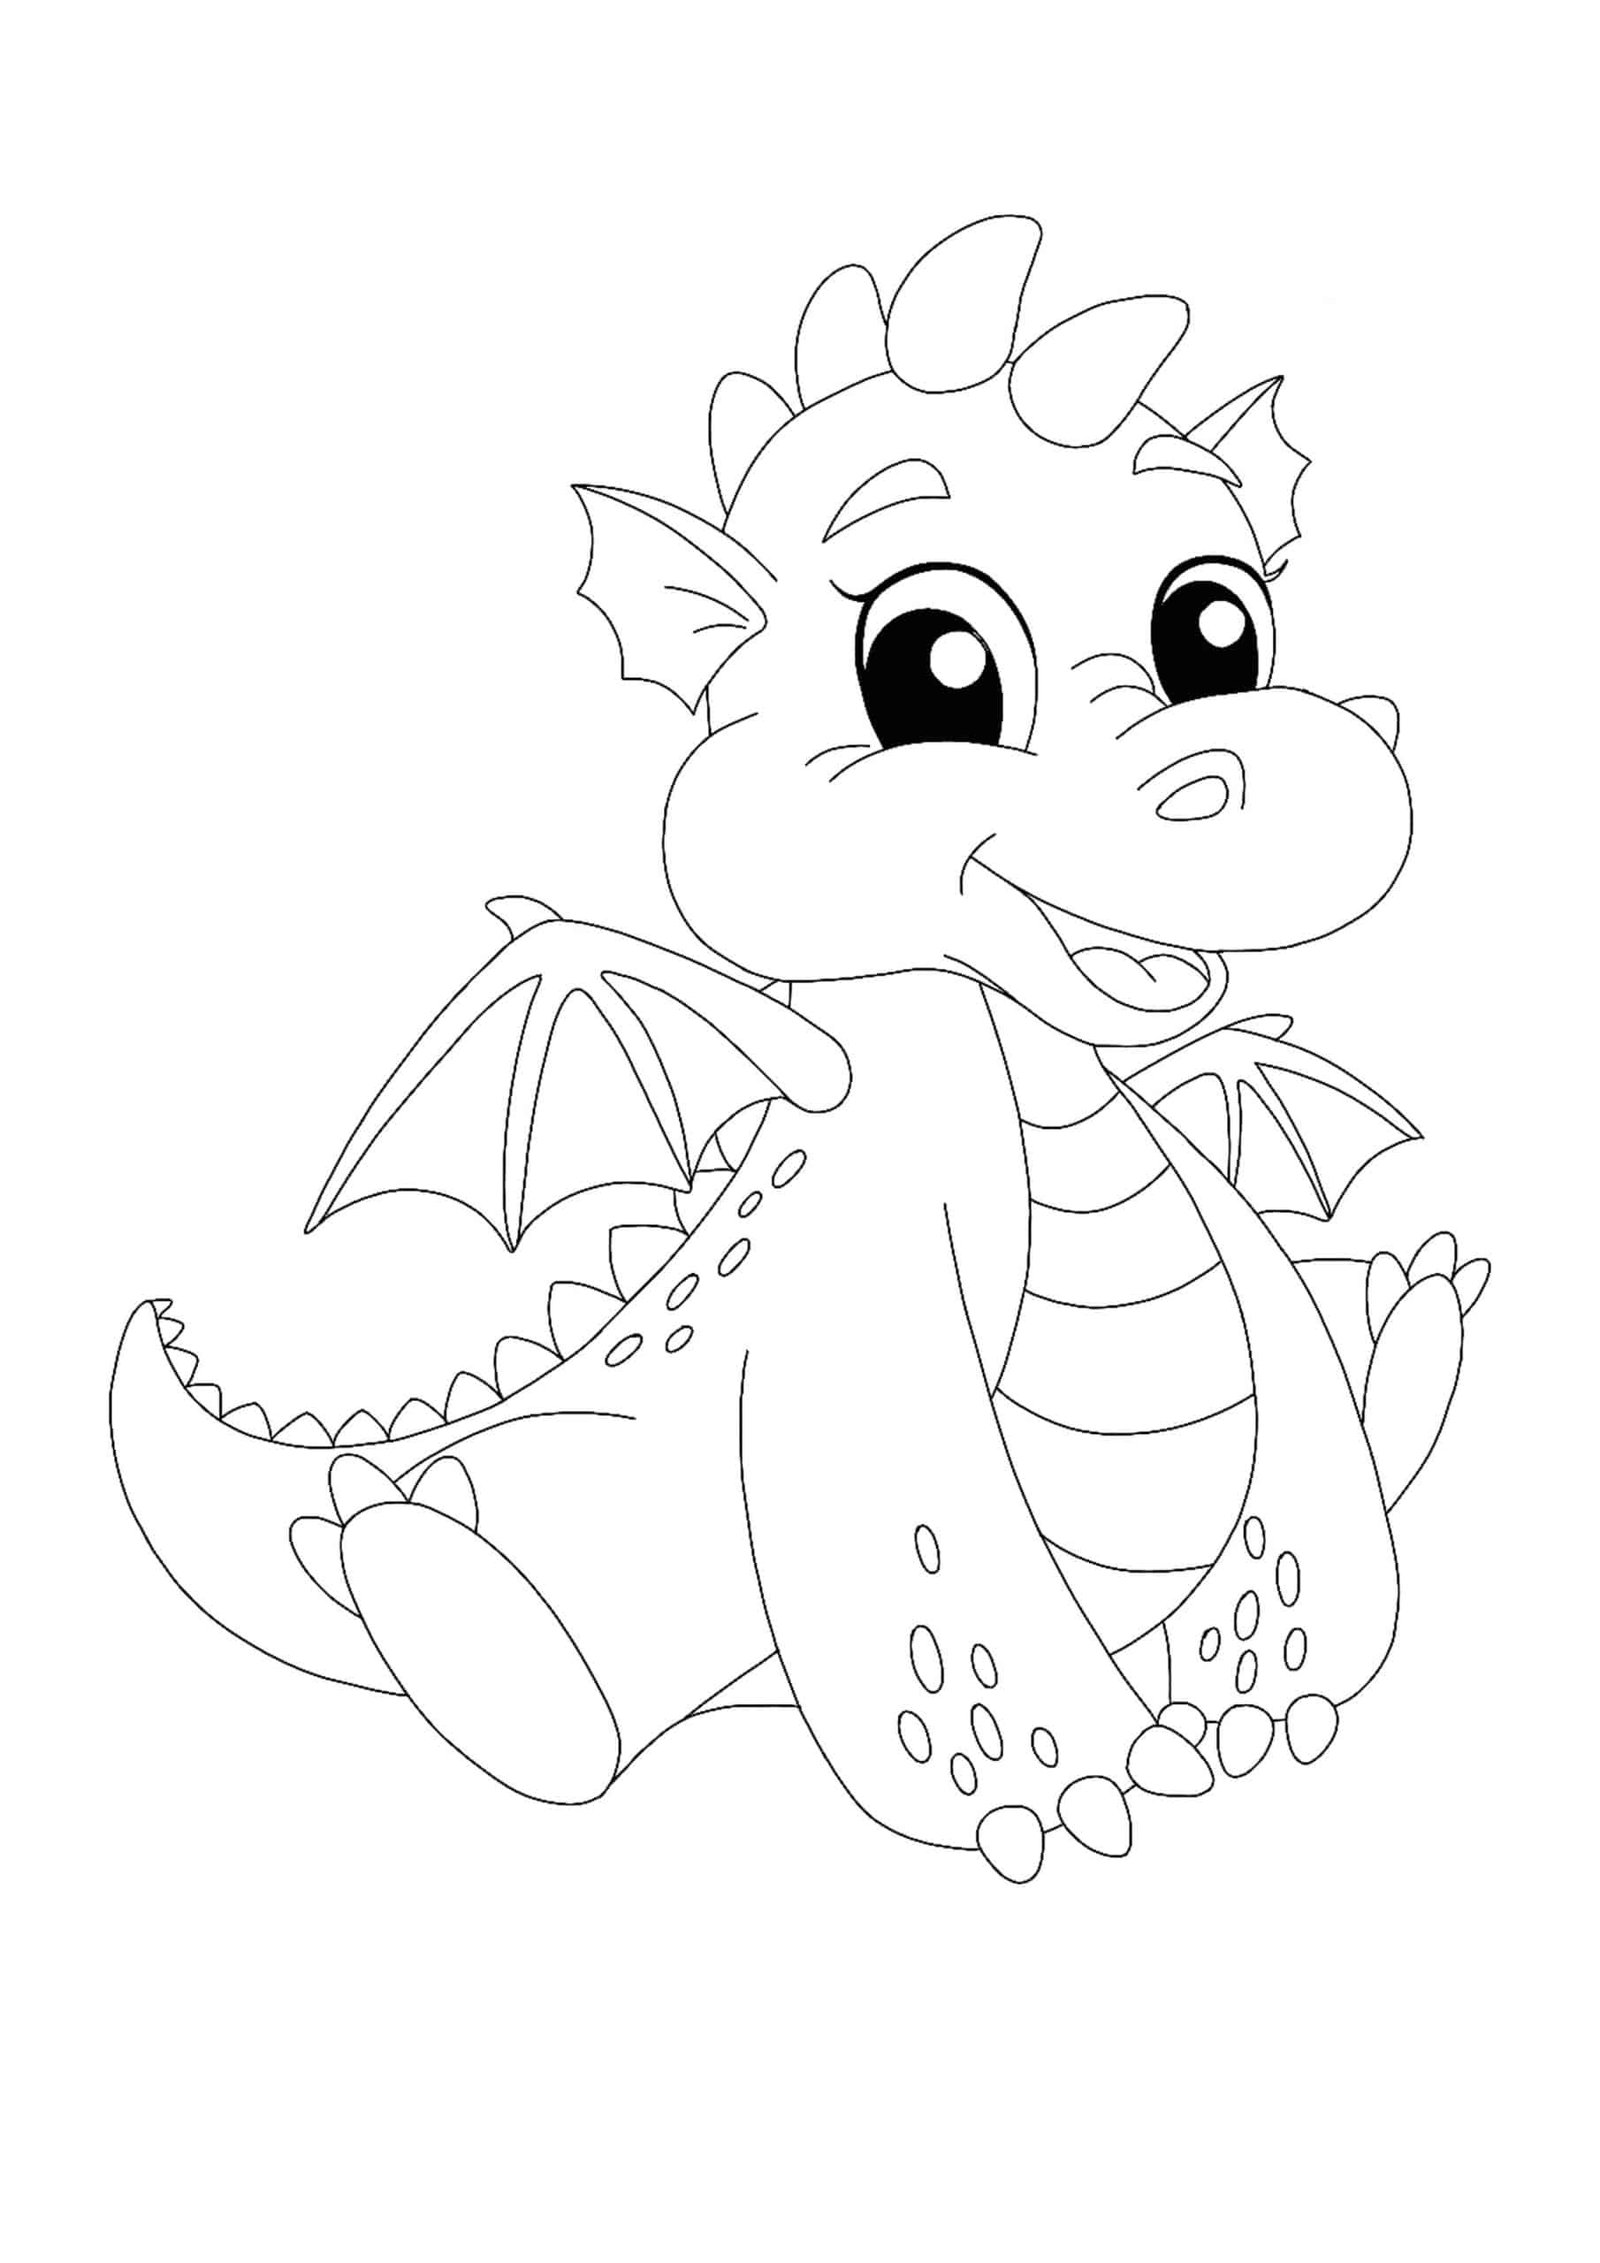 Cute Kawaii Dragon coloring page